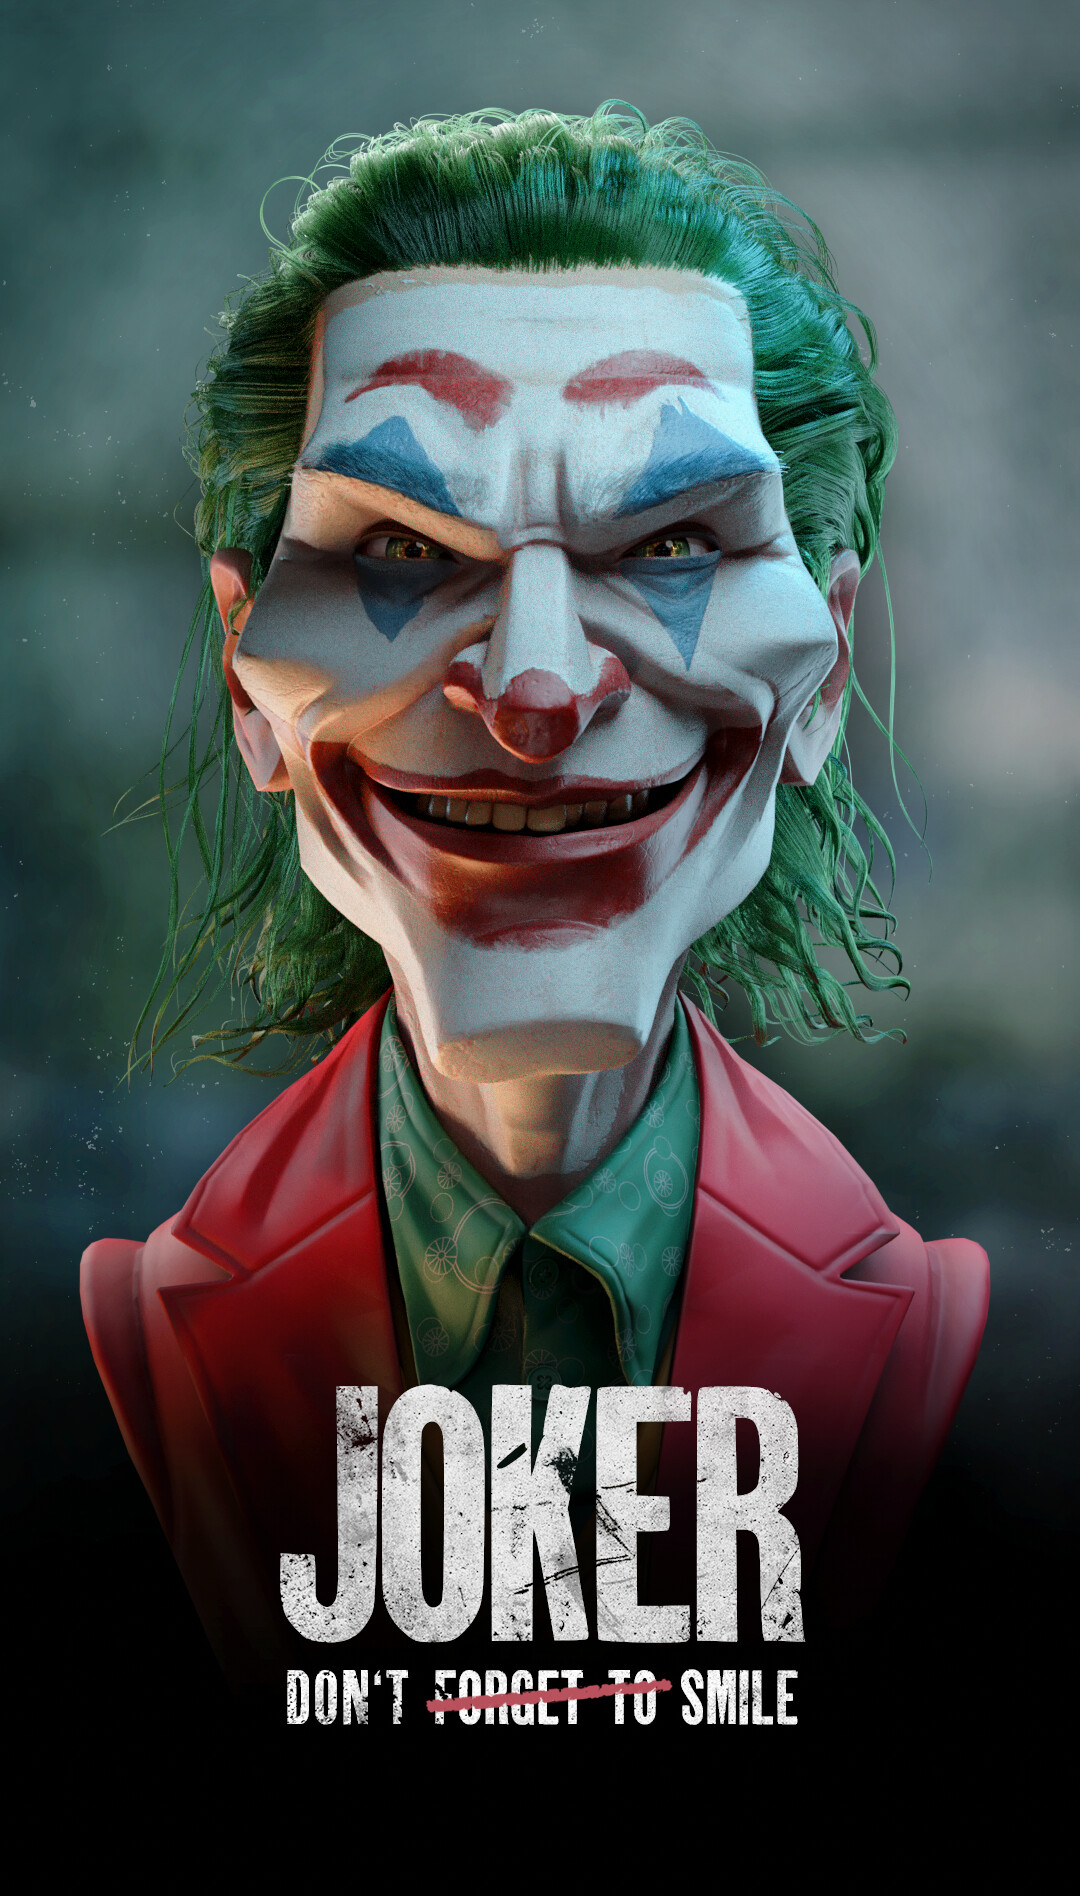 Joker 2019 Movie Joker Smile Digital Art Poster Humor Green Hair Face Makeup Arthur Fleck 1080x1896